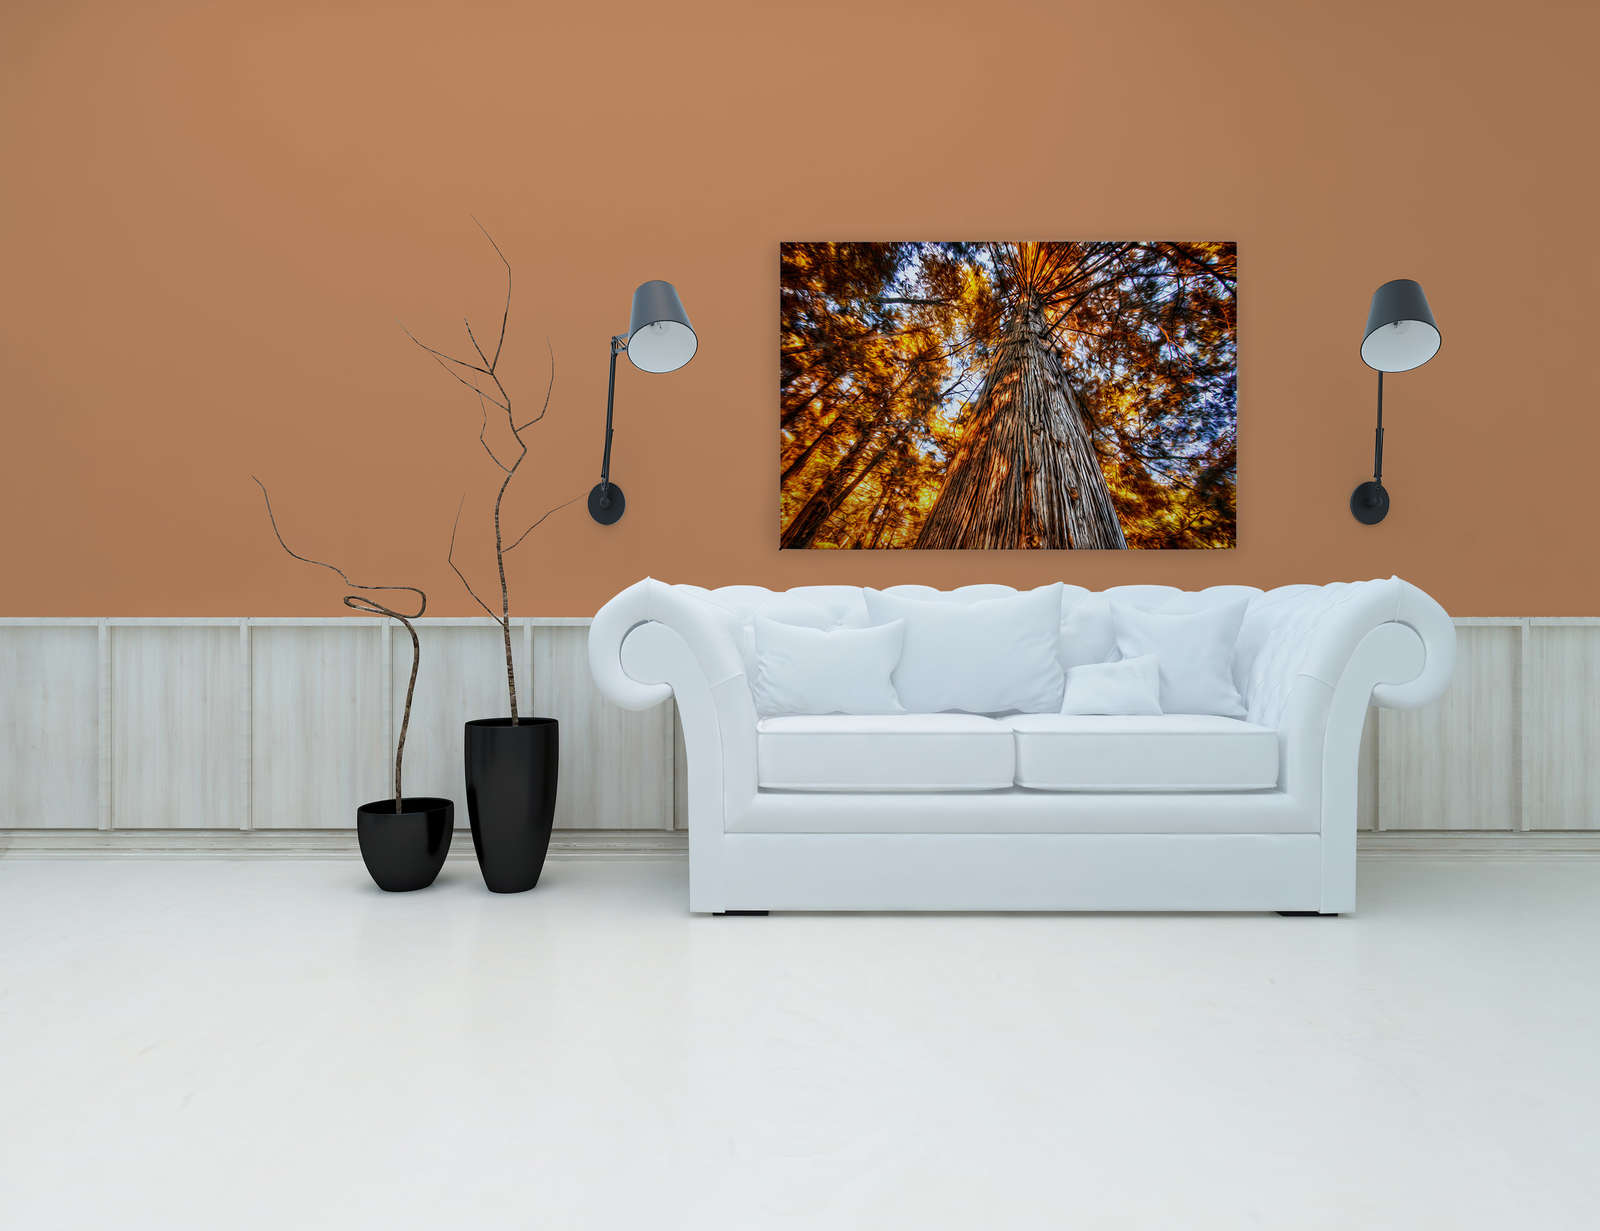             Leinwandbild Blick in die Baumkrone in glühenden Farben – 1,20 m x 0,80 m
        